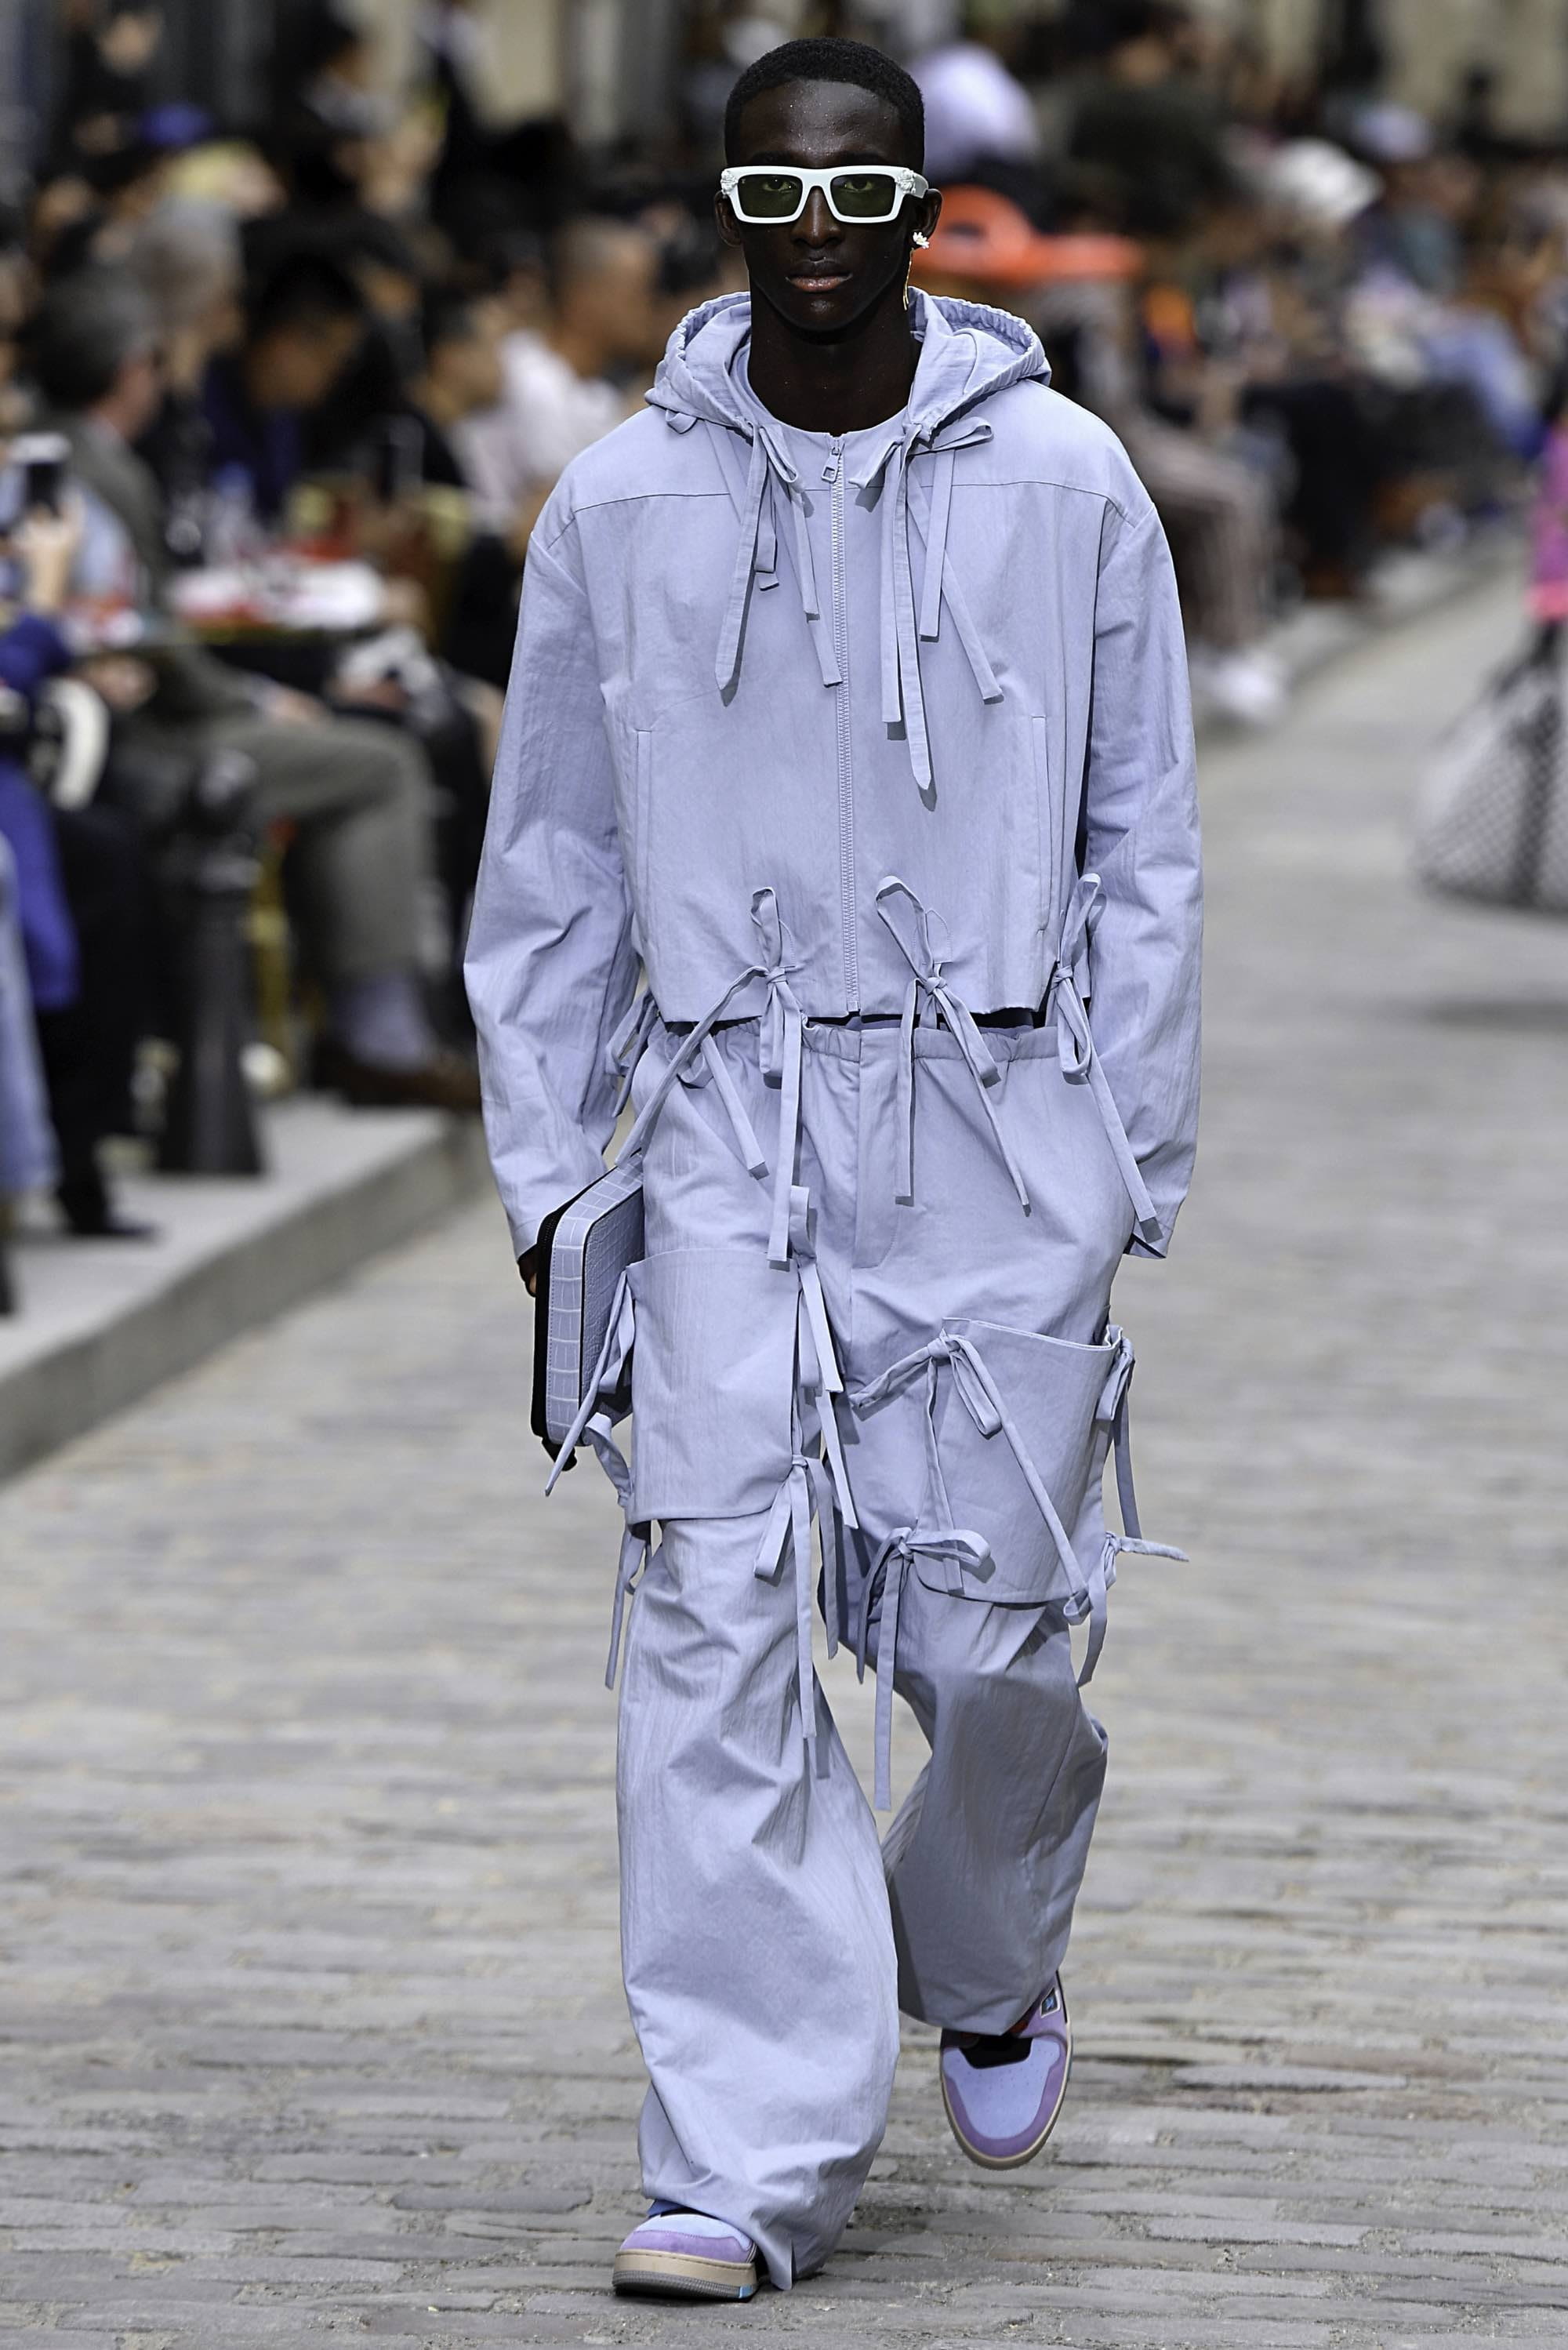 Louis Vuitton SS20 menswear #12 - Tagwalk: The Fashion Search Engine